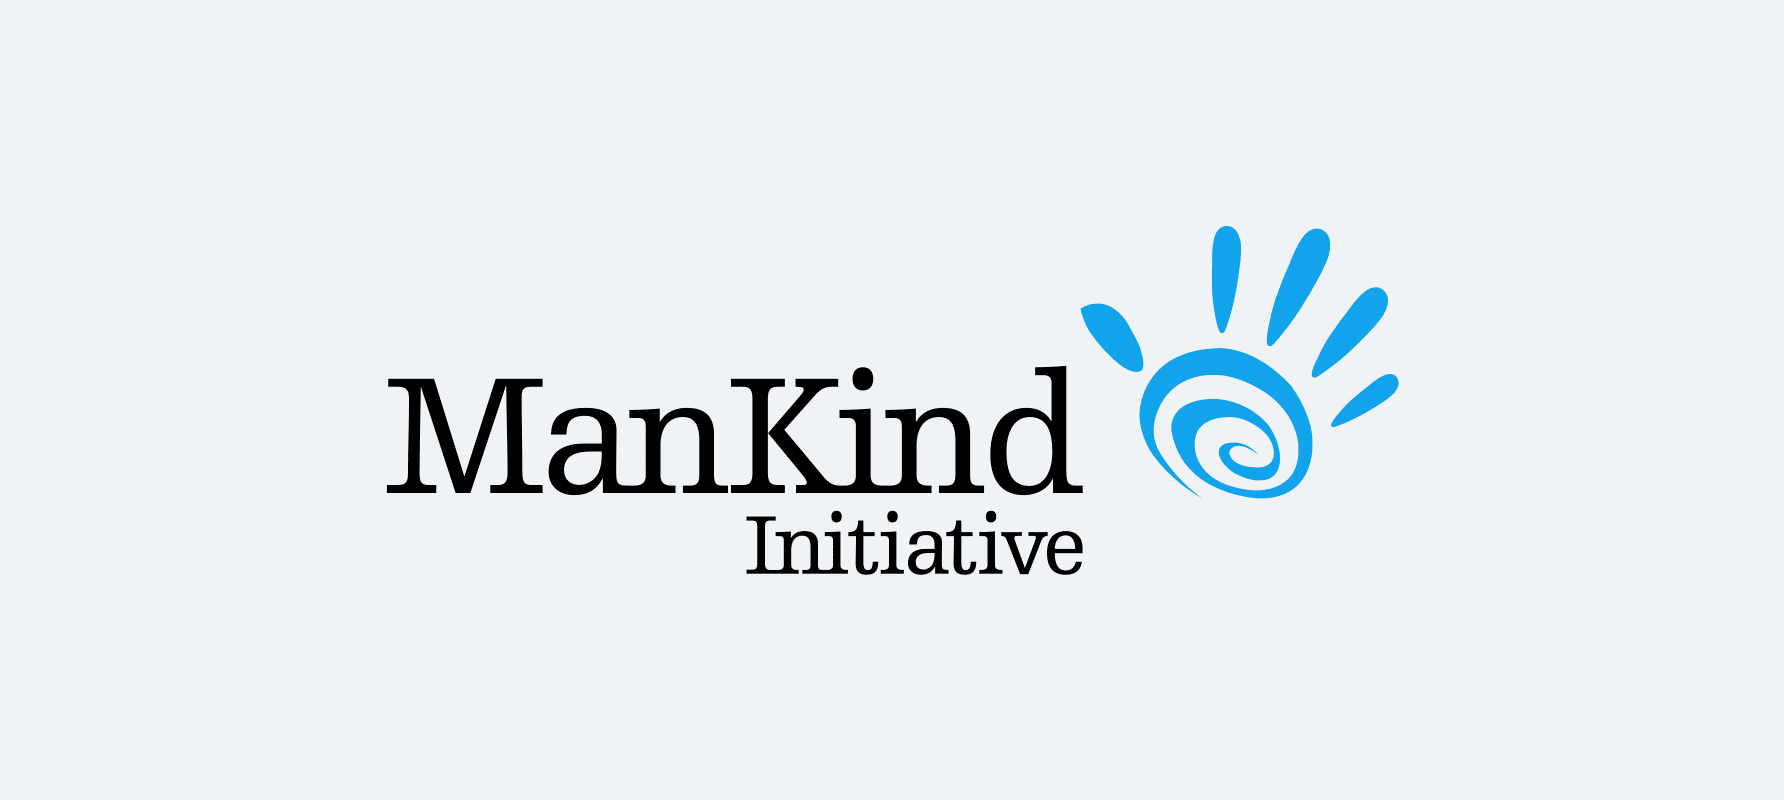 (c) Mankind.org.uk